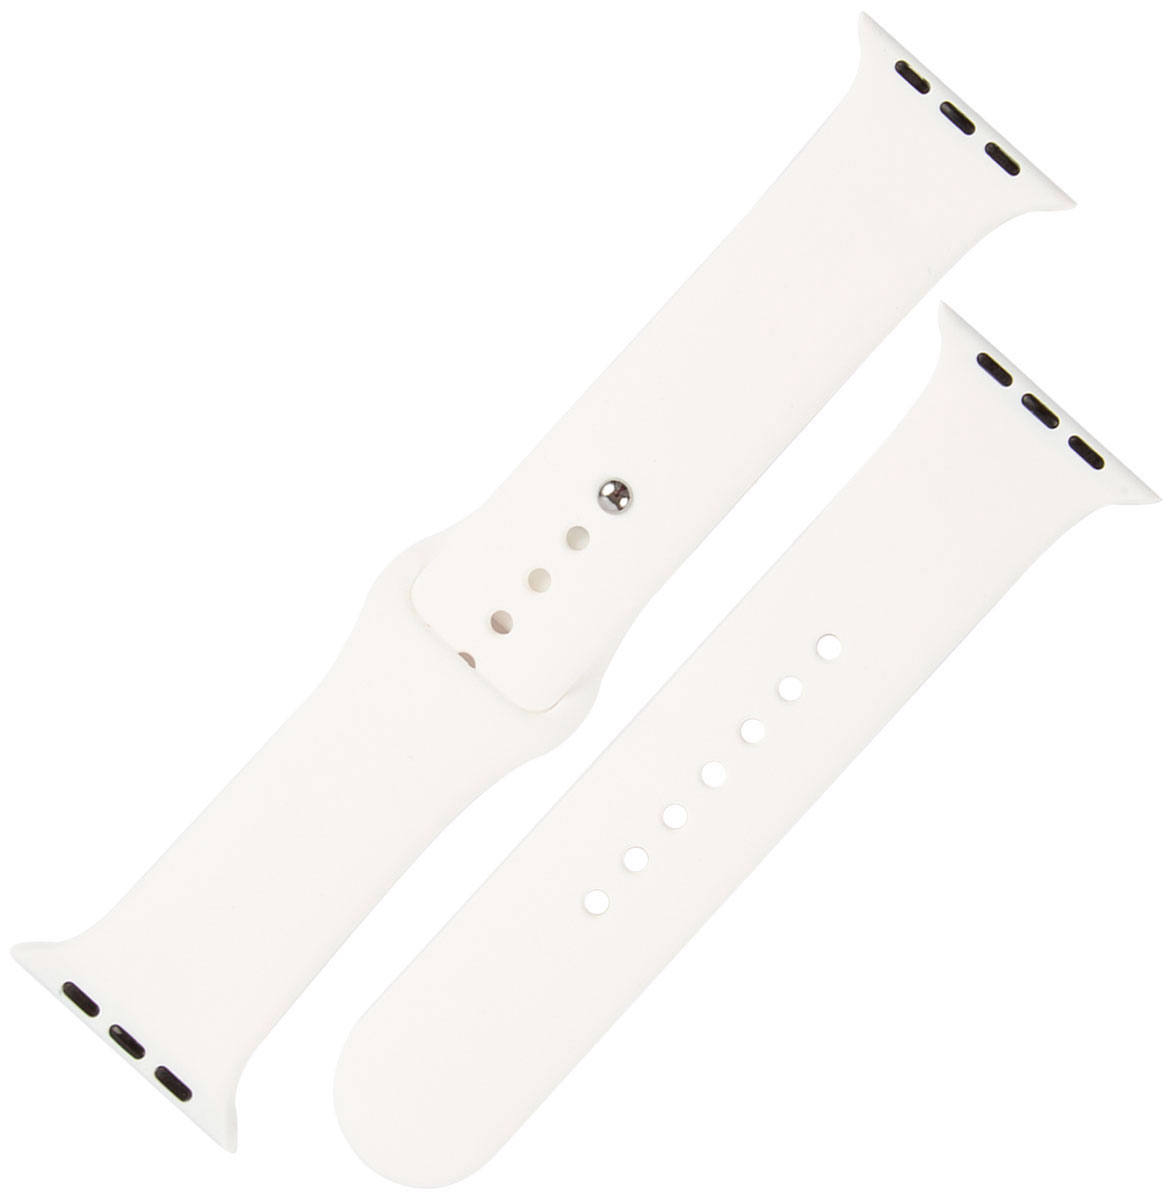 Ремешок силиконовый mObility для Apple watch – 42-44 мм (S3/S4/S5 SE/S6), белый ремешок силиконовый mobility для apple watch – 42 44 мм s3 s4 s5 se s6 грейпфрут